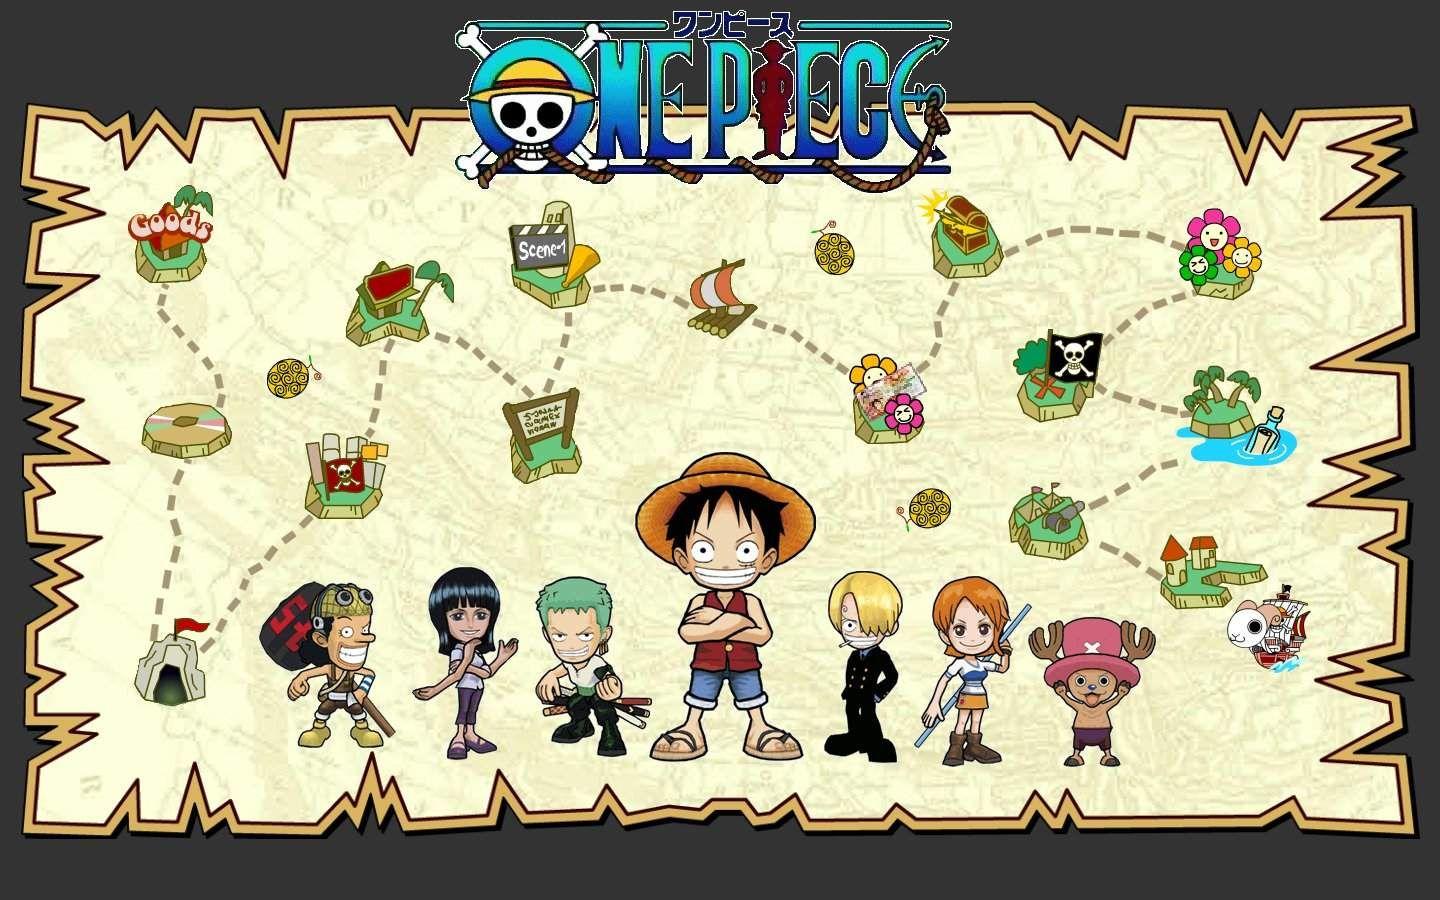 One Piece Chibi 2024 - Bộ anime lừng danh One Piece đã trở nên vui nhộn hơn bao giờ hết với phiên bản Chibi mới nhất! Đánh dấu cho sự trở lại của băng hải tặc Mũ Rơm, những nhân vật yêu thích của series sẽ được tái hiện với độ cute đầy ấn tượng. Khán giả sẽ được thưởng thức những câu chuyện riêng biệt đầy hài hước của từng nhân vật trong mùa mới này. Hãy cùng đón chờ và xem ngay nhé!